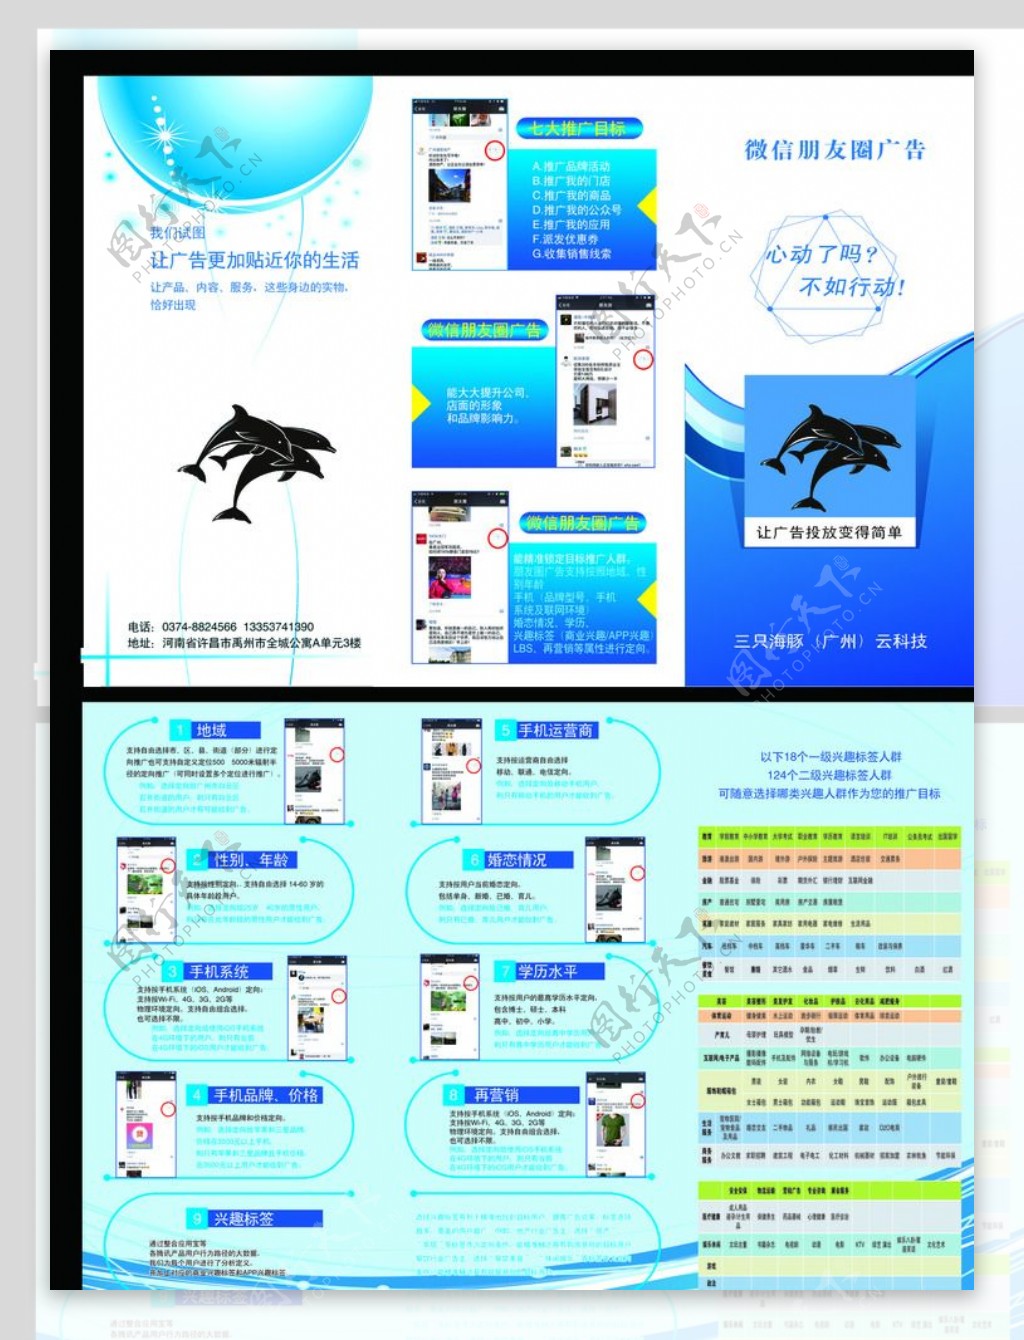 三只海豚朋友圈广告彩页